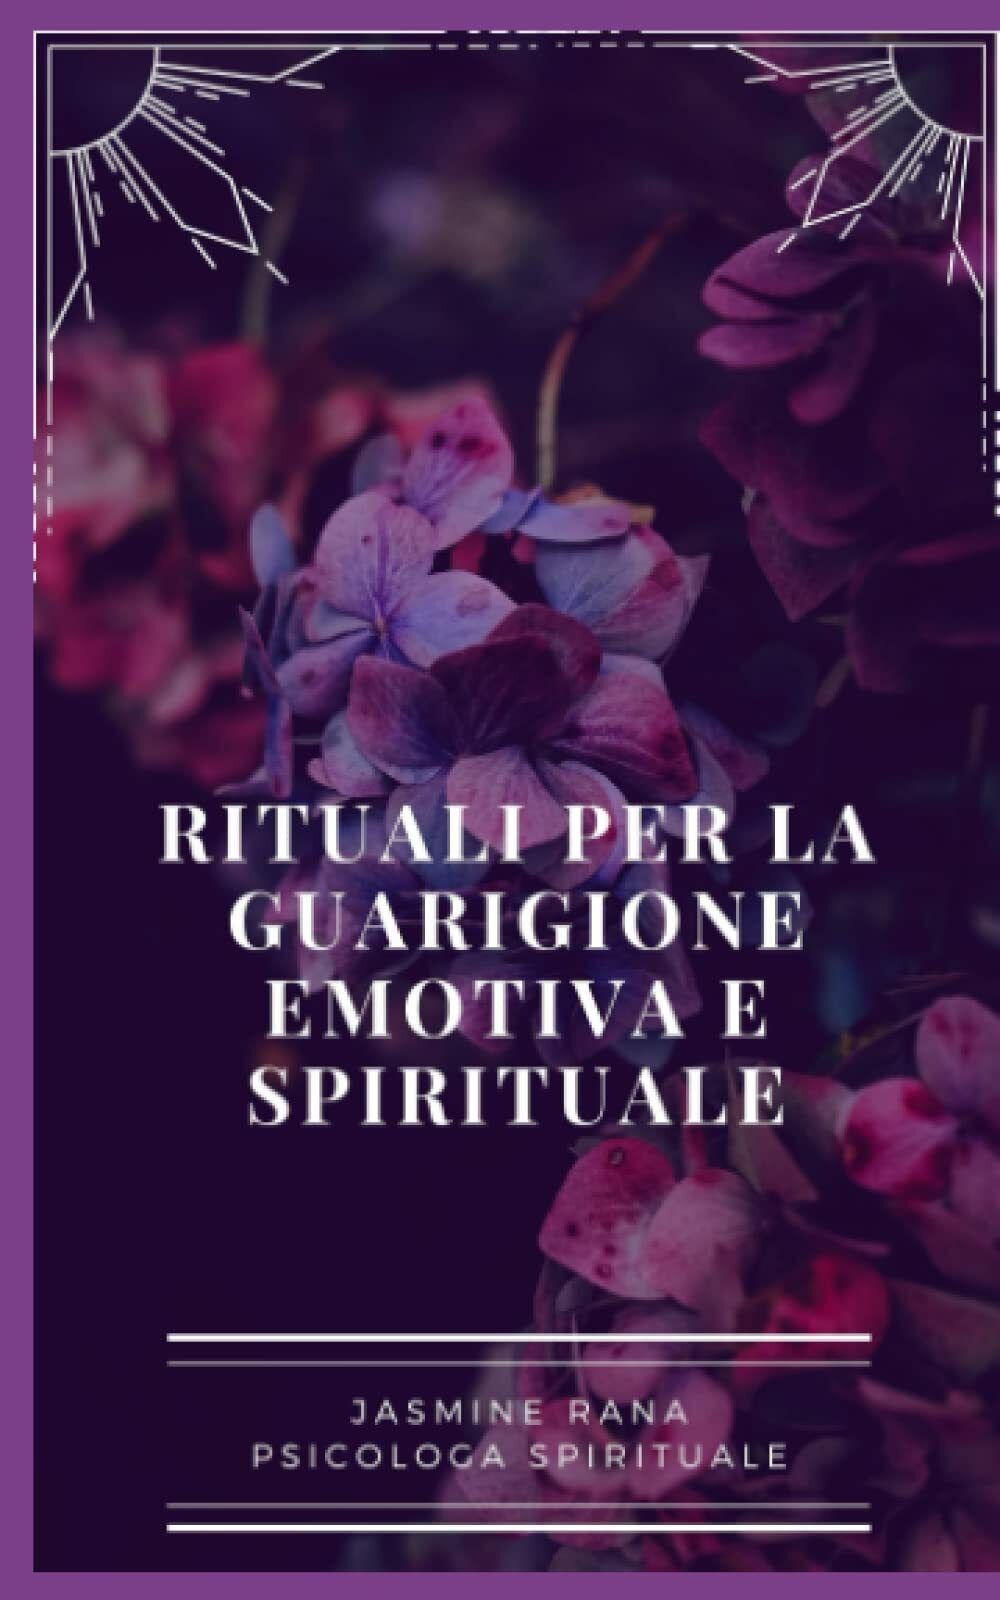 Rituali Per La Guarigione Emotiva E Spirituale: Pratiche Quotidiane Facili e Sem